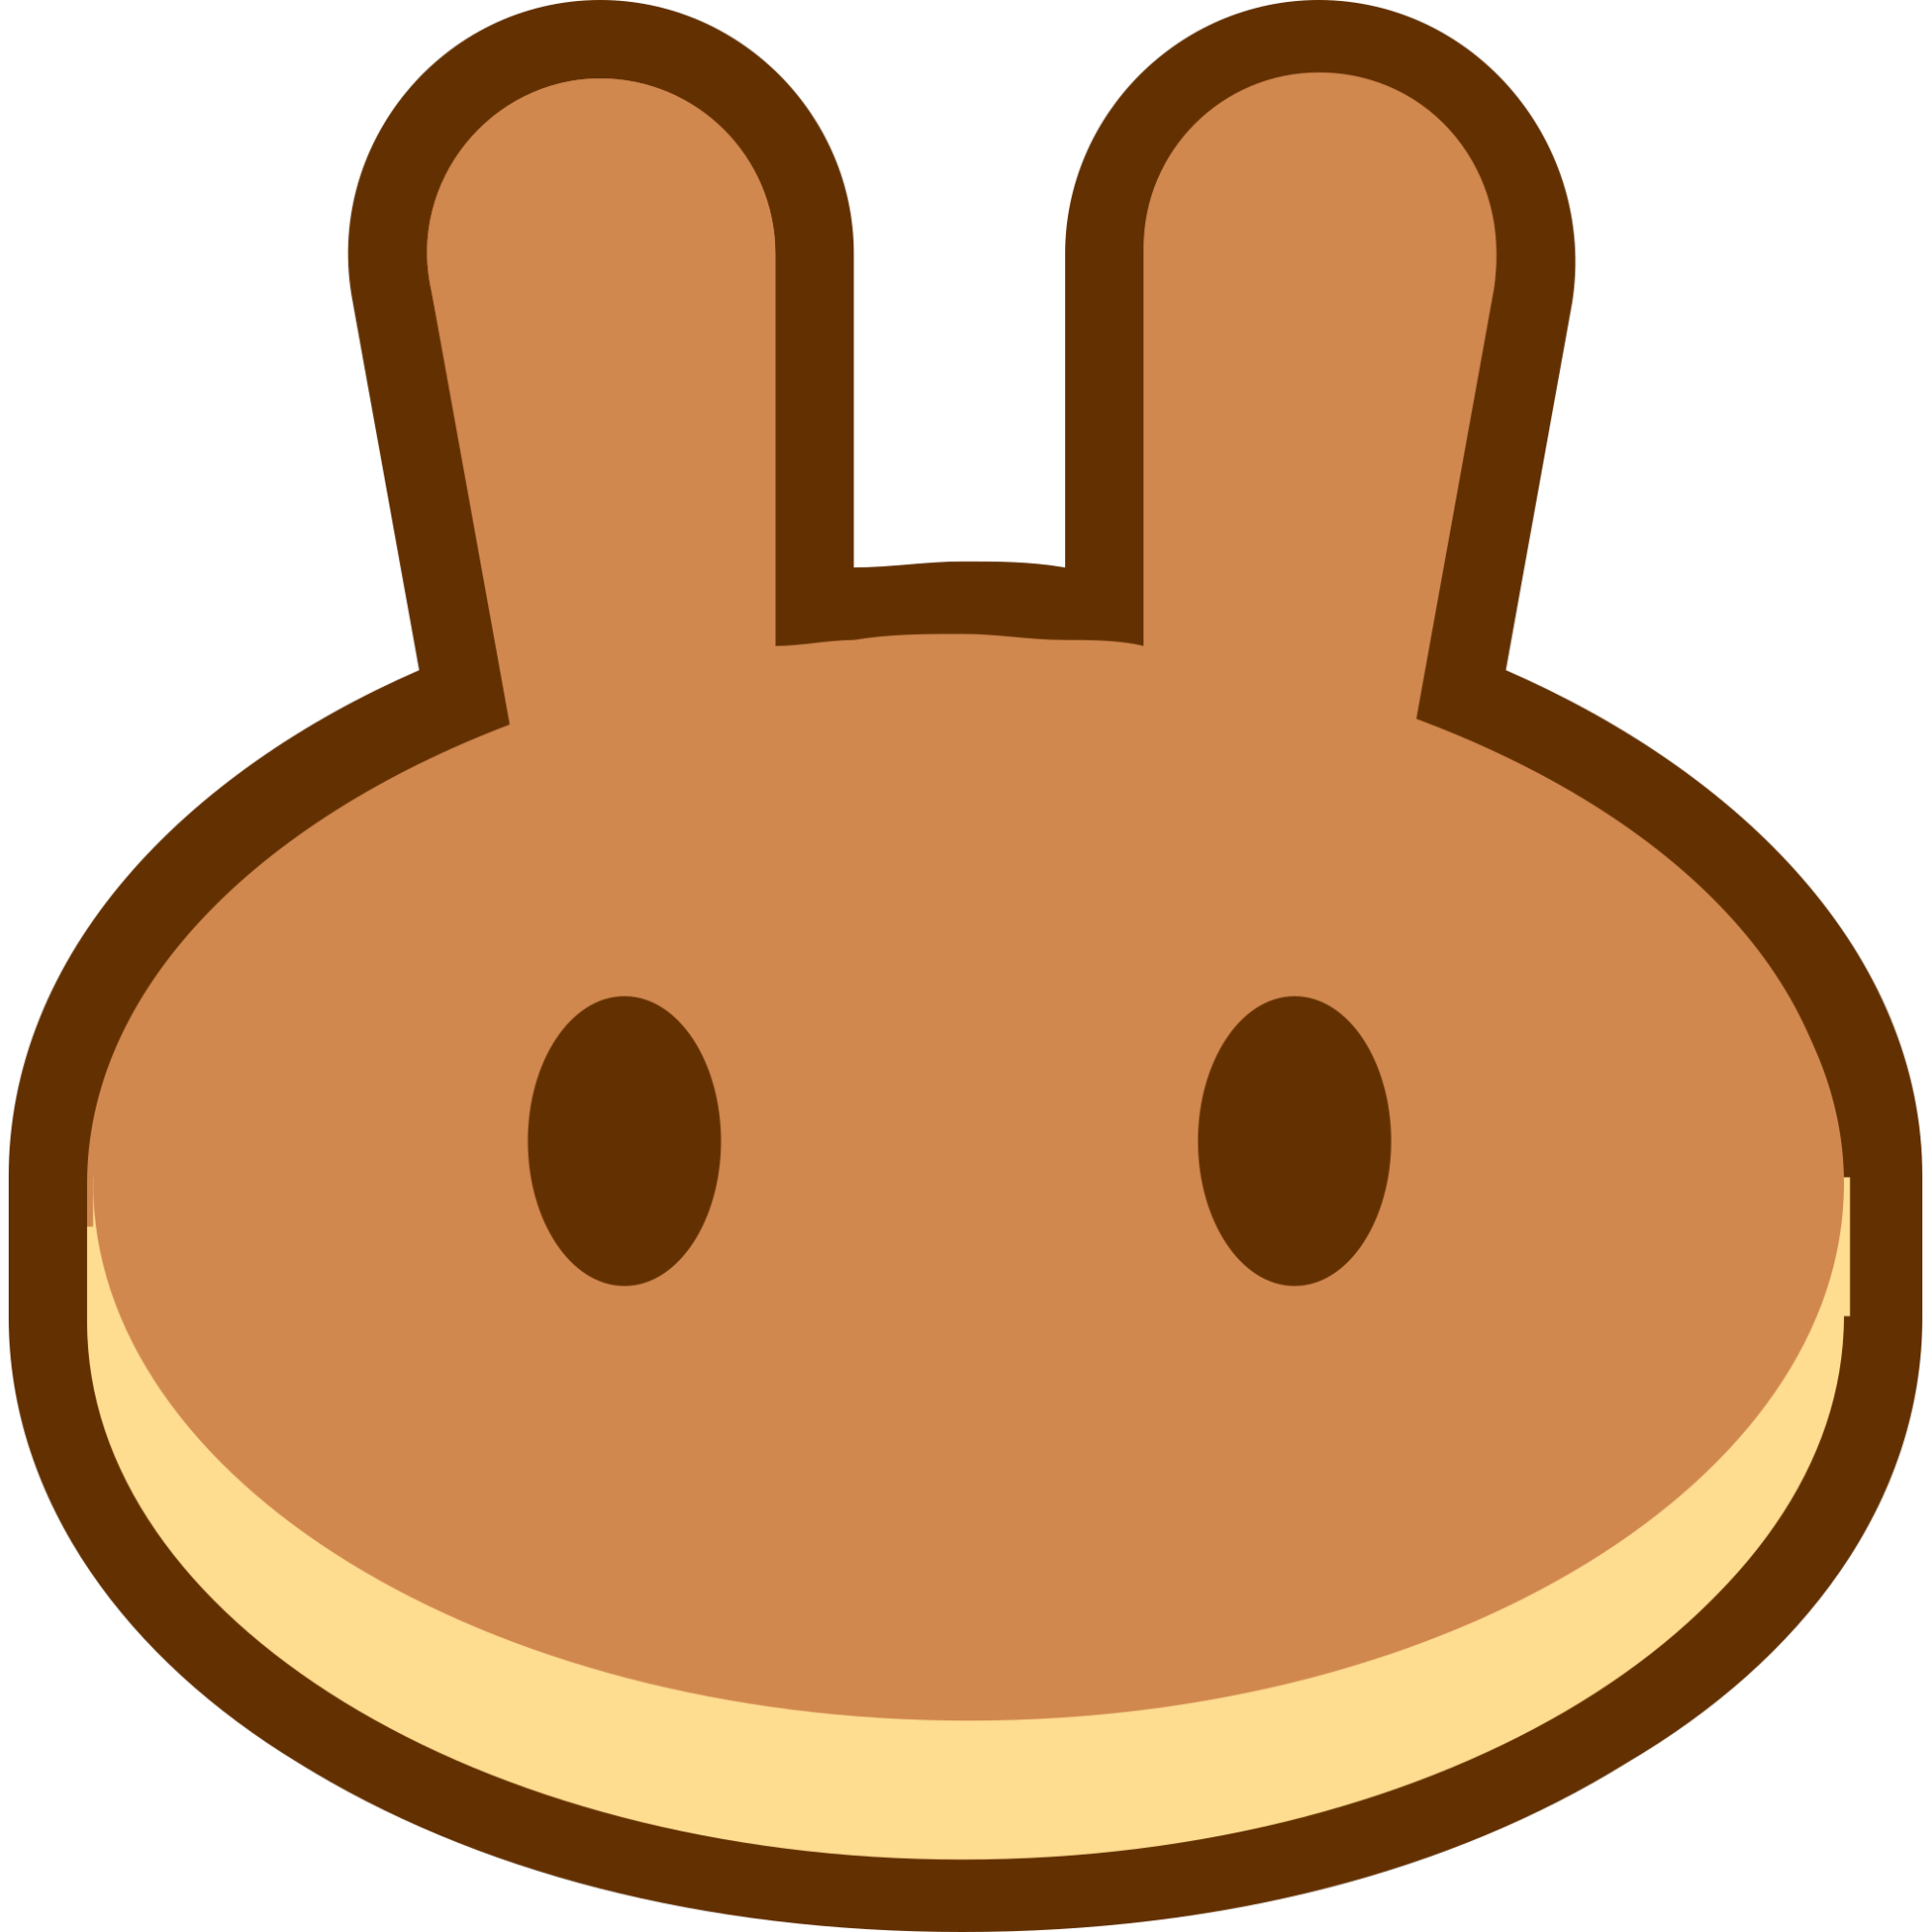 PancakeSwap (CAKE) logo.